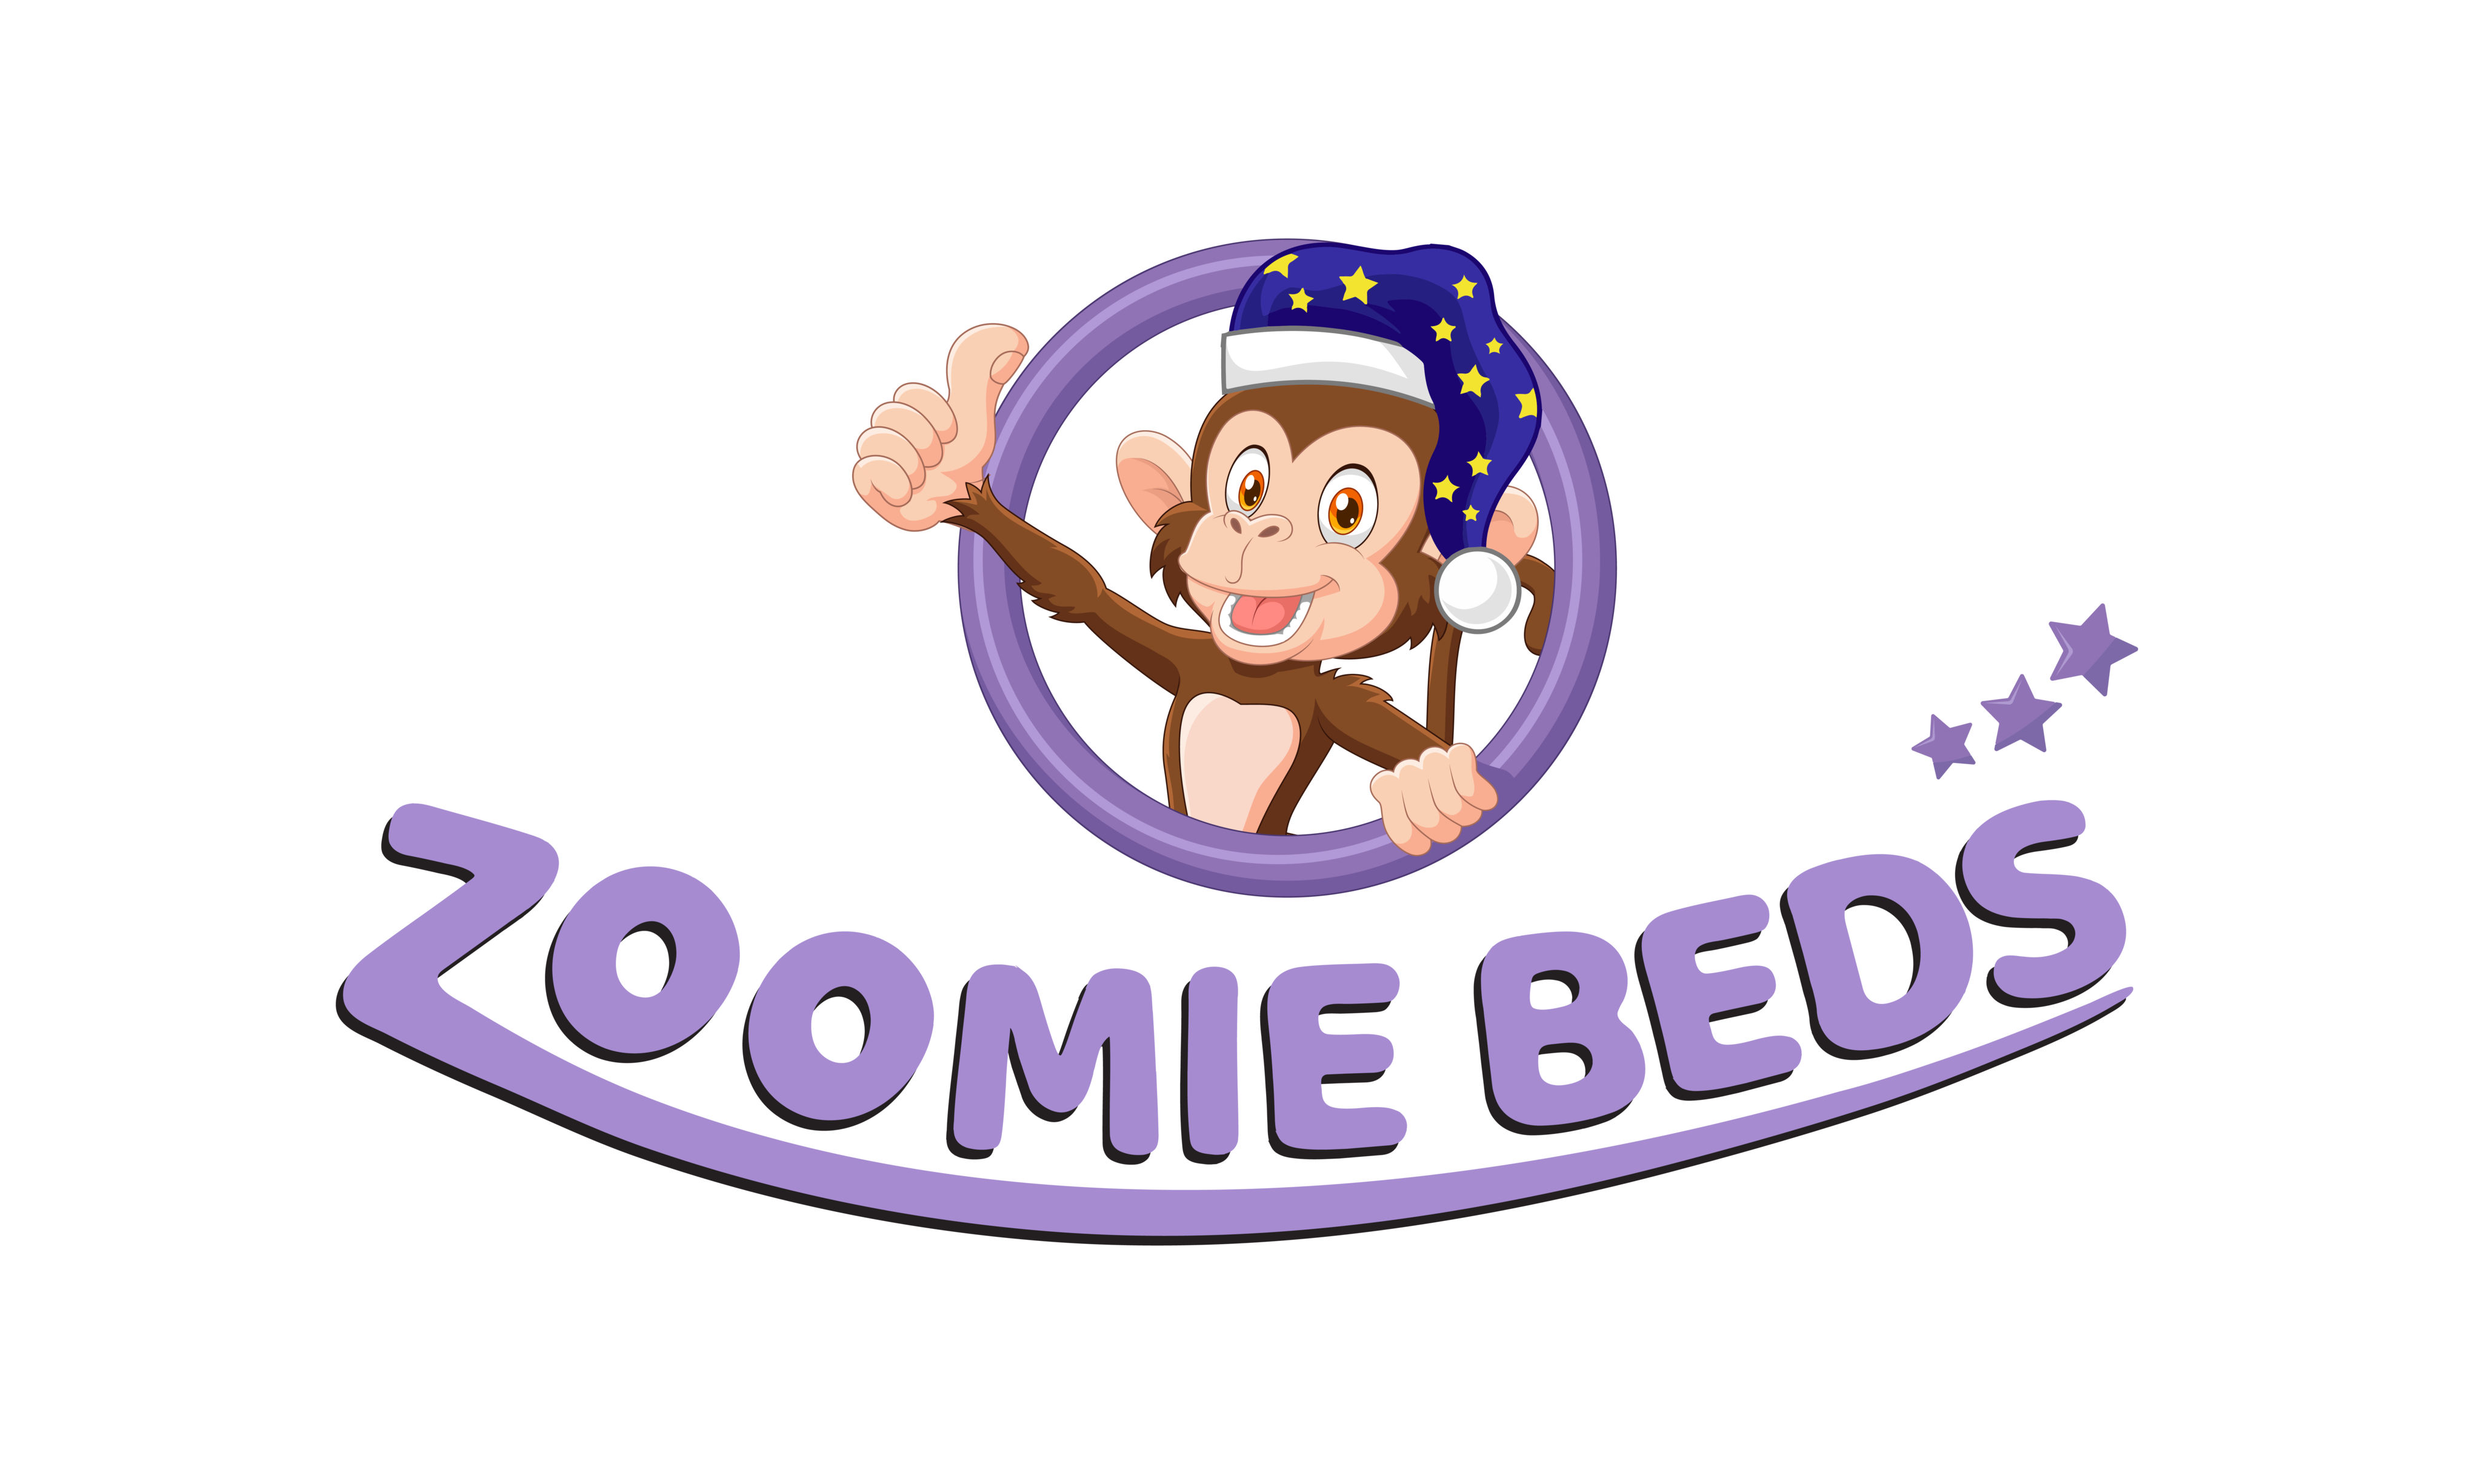 Zoomie Beds